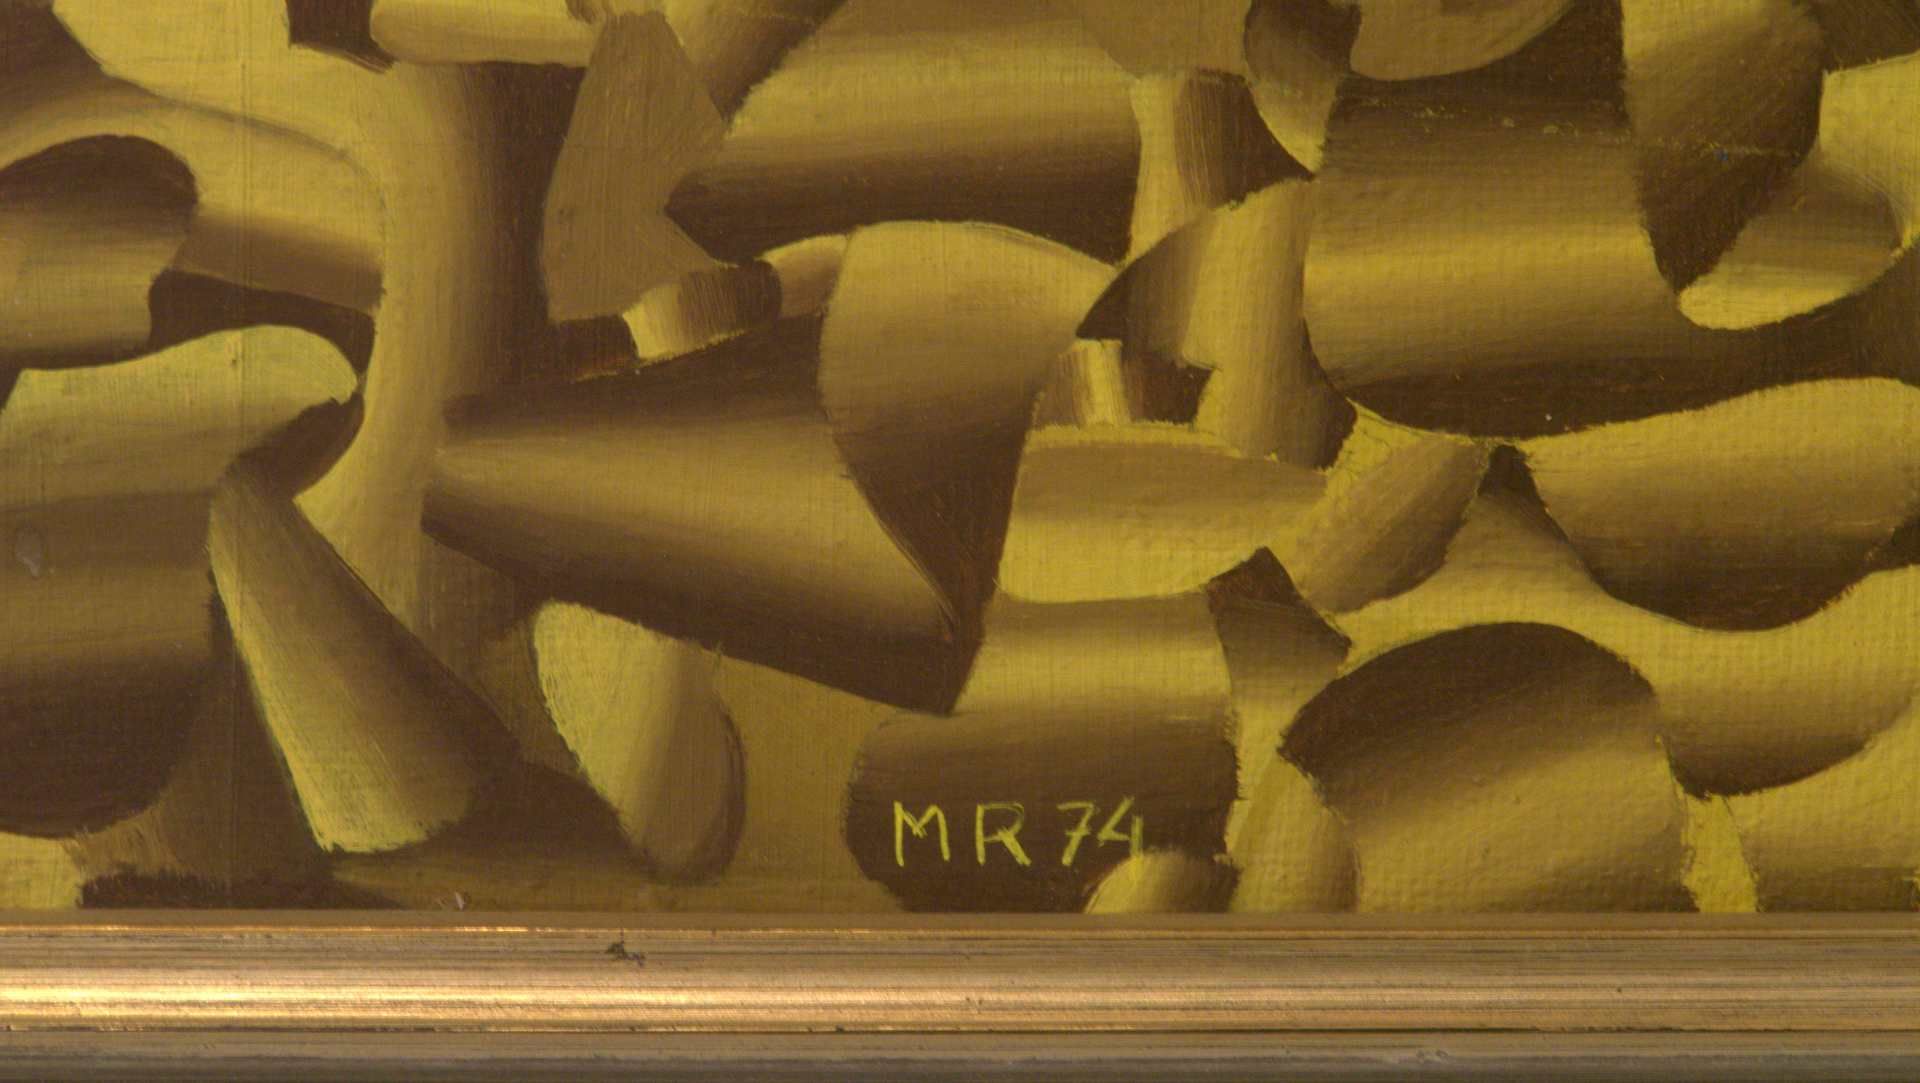 "Tulpe", Öl/l., monogr. M.R., dat. '74, ca. 32 x 43 cm - Bild 2 aus 2